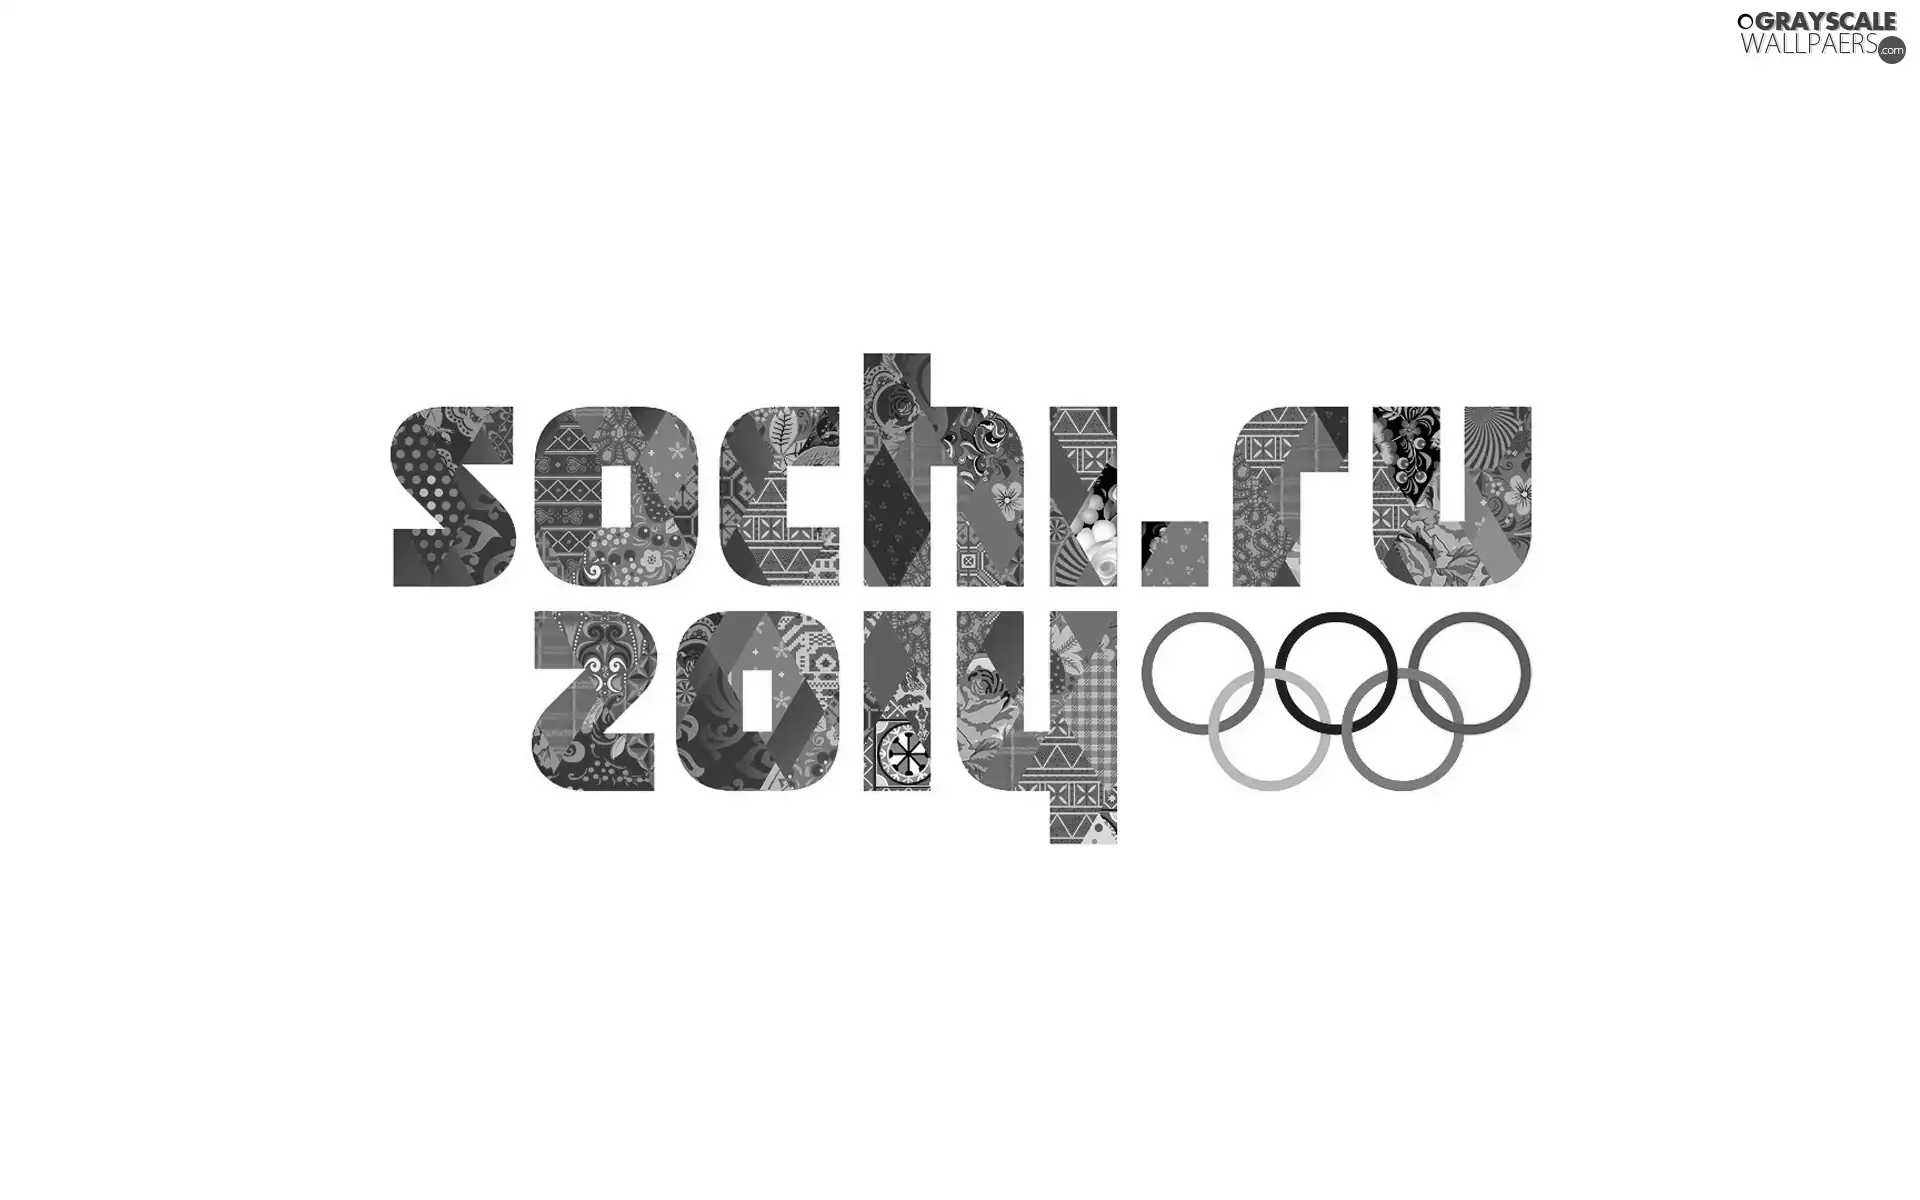 Sochi 2014, Games, Olympic